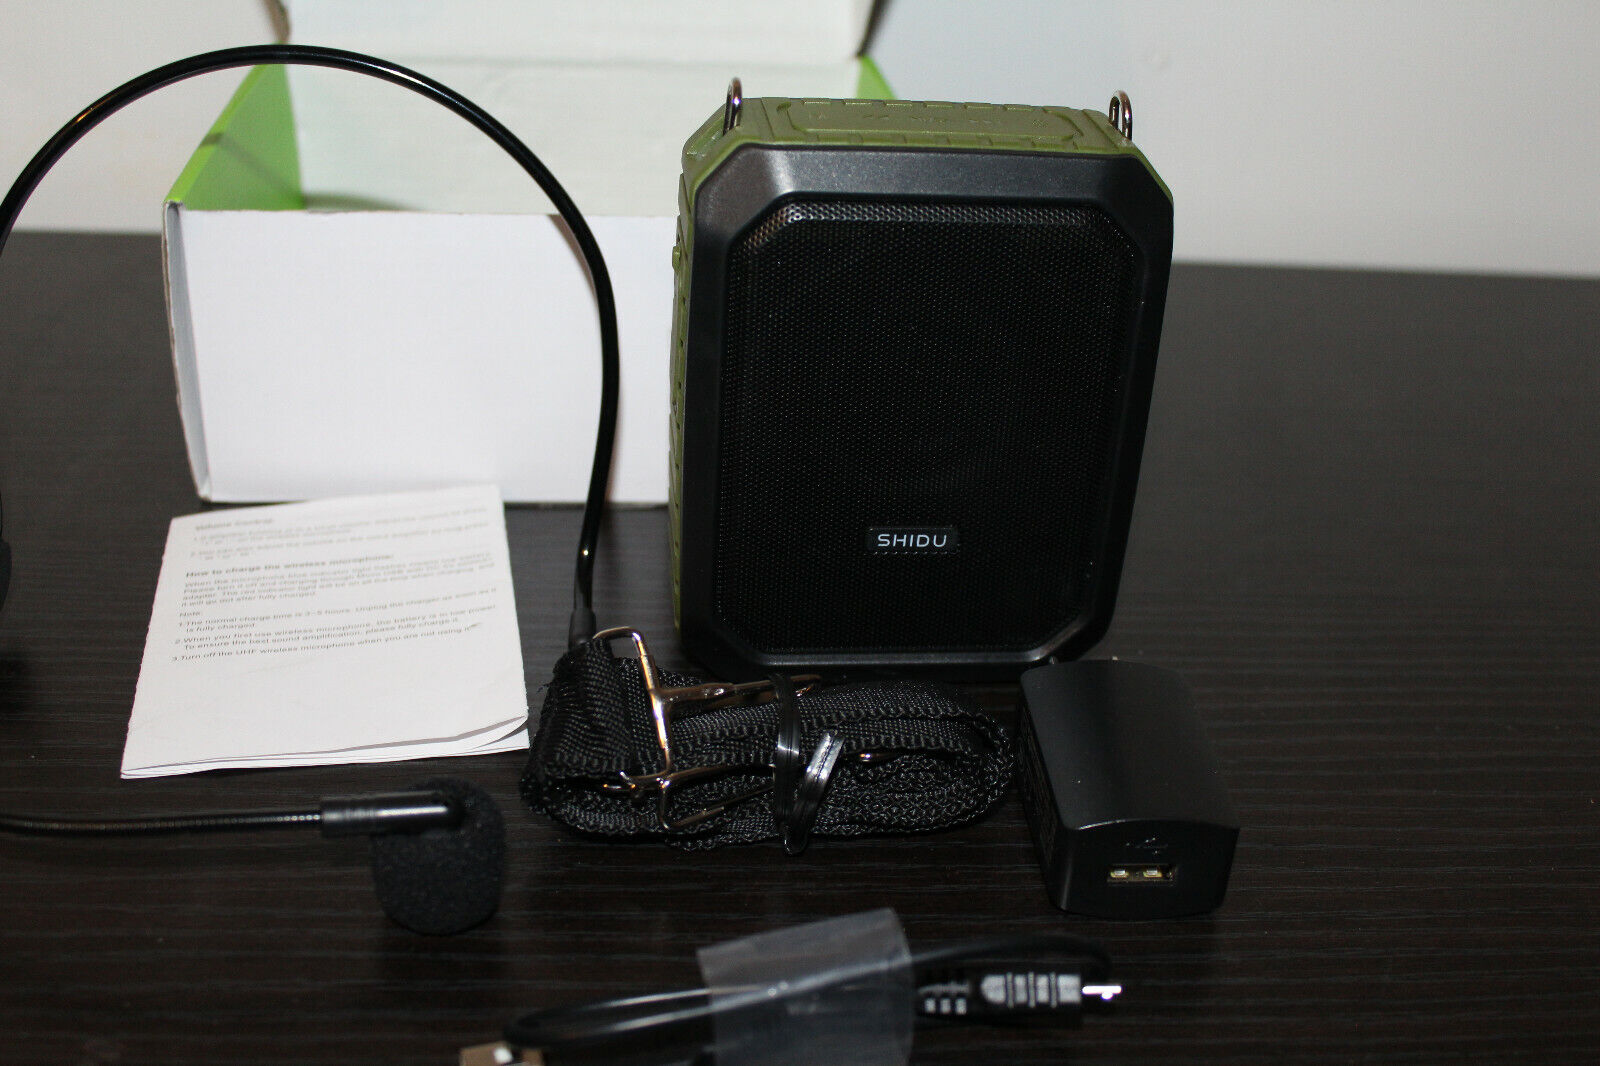 SHIDU Green M800 Bluetooth Voice Amplifier, Personal Voice Amplifier Waterproof